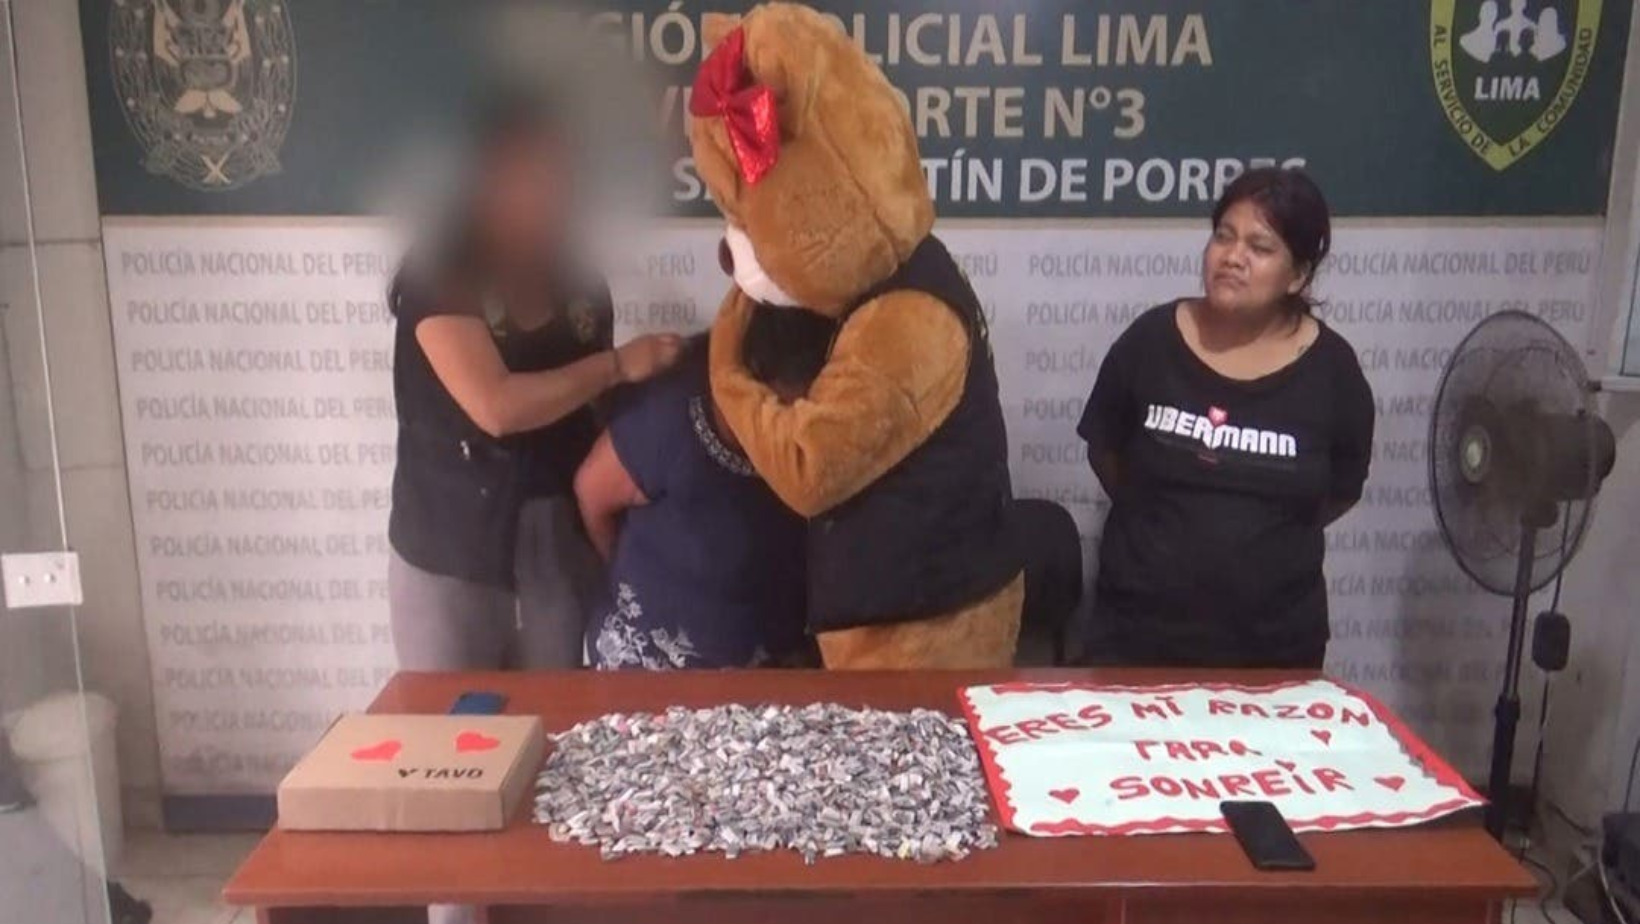 Persona arrestada por agente de la Policía Nacional de Perú disfrazado de oso de peluche. Foto: Fuente externa